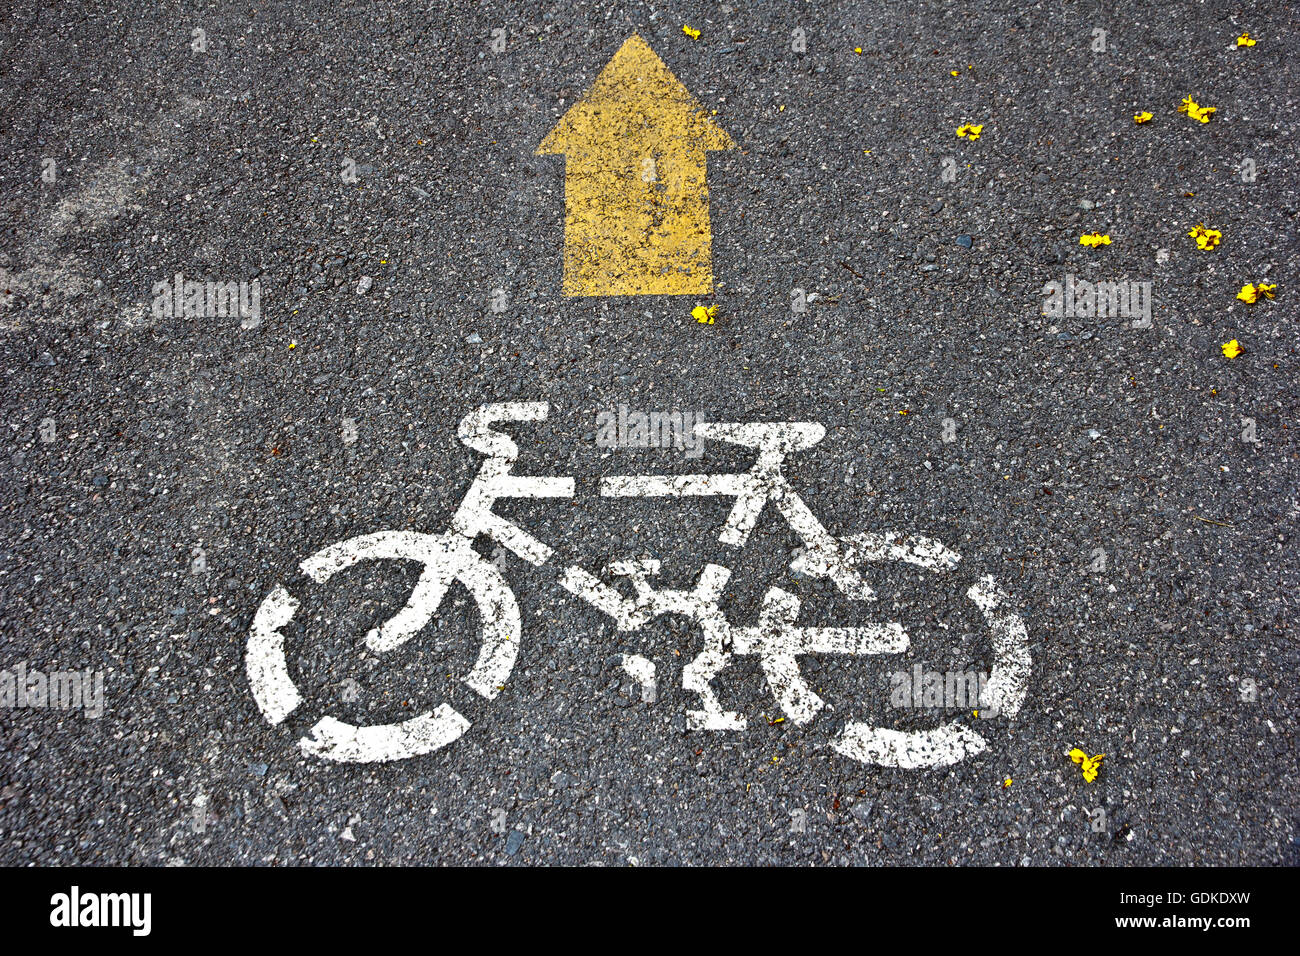 L'image d'une moto road sign et flèche Banque D'Images